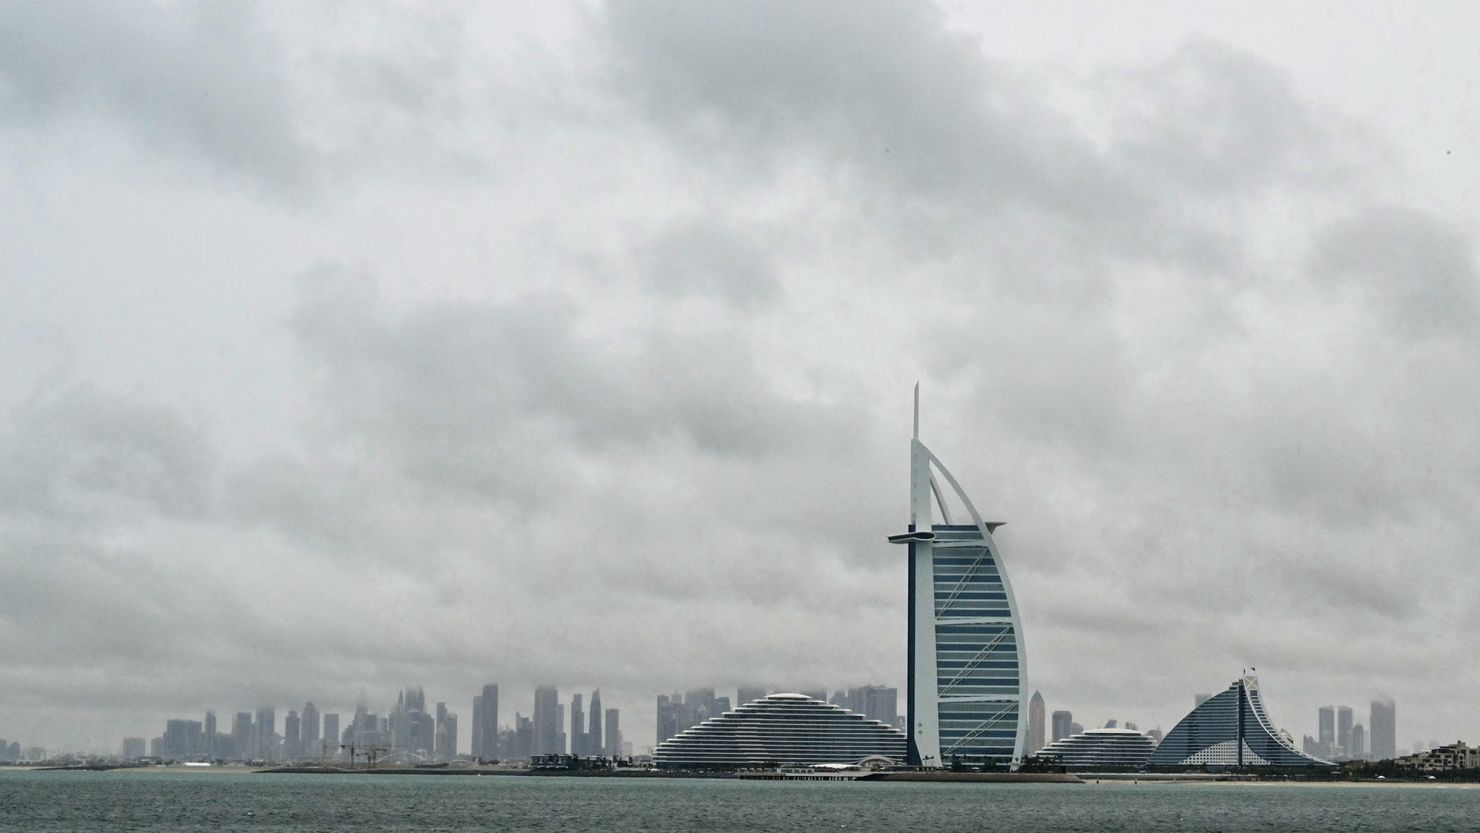 Dubai tiếp tục ngập lụt nghiêm trọng: Hàng loạt chuyến bay bị hủy, trường học và văn phòng nhận lệnh đóng cửa- Ảnh 1.